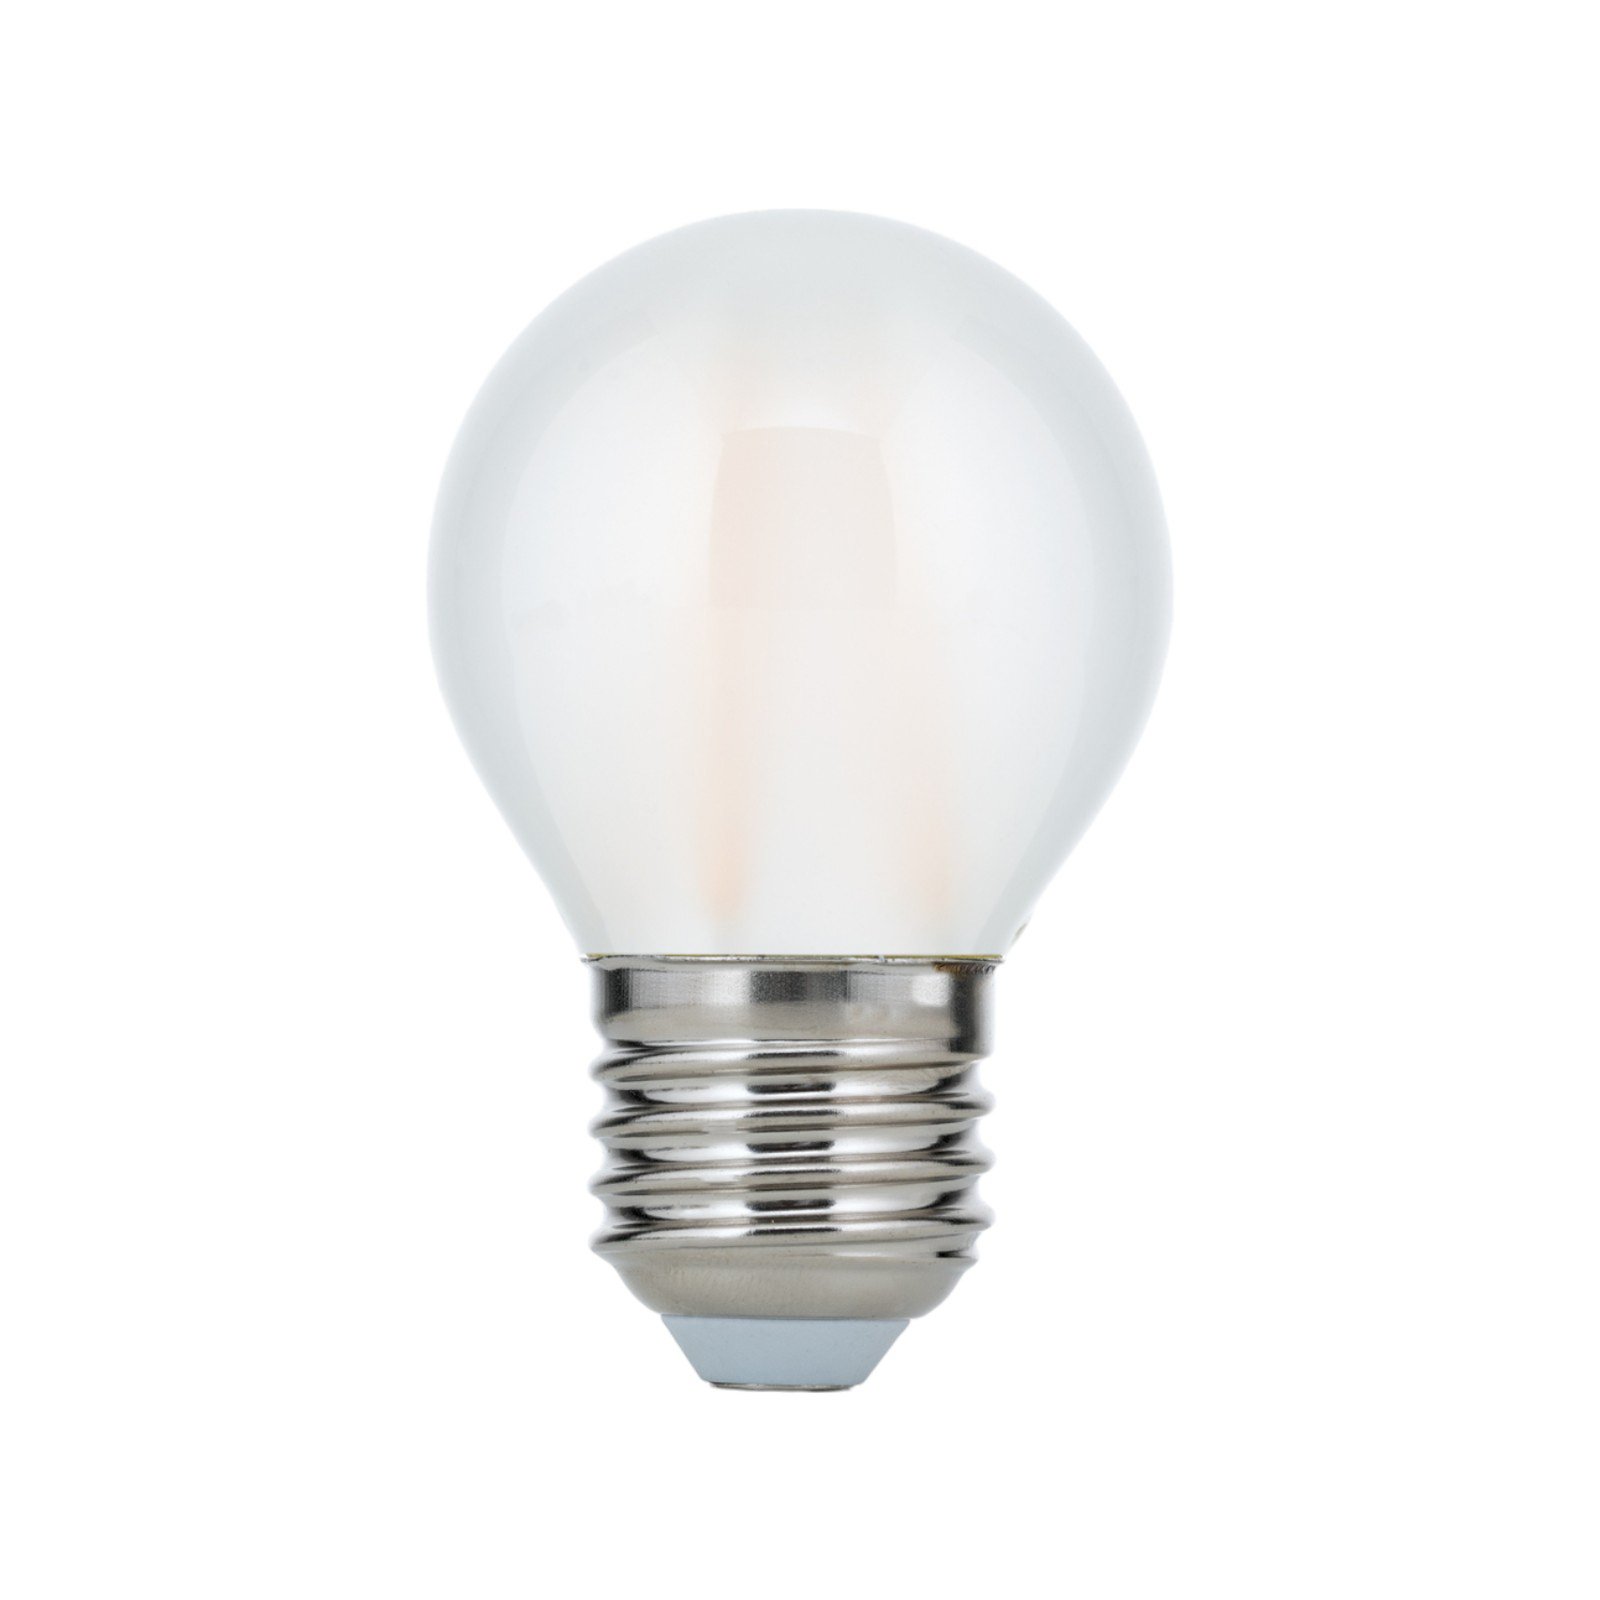 Ampoule LED, E27 G45, mate, 6W, 827, 720 lm, intensité variable